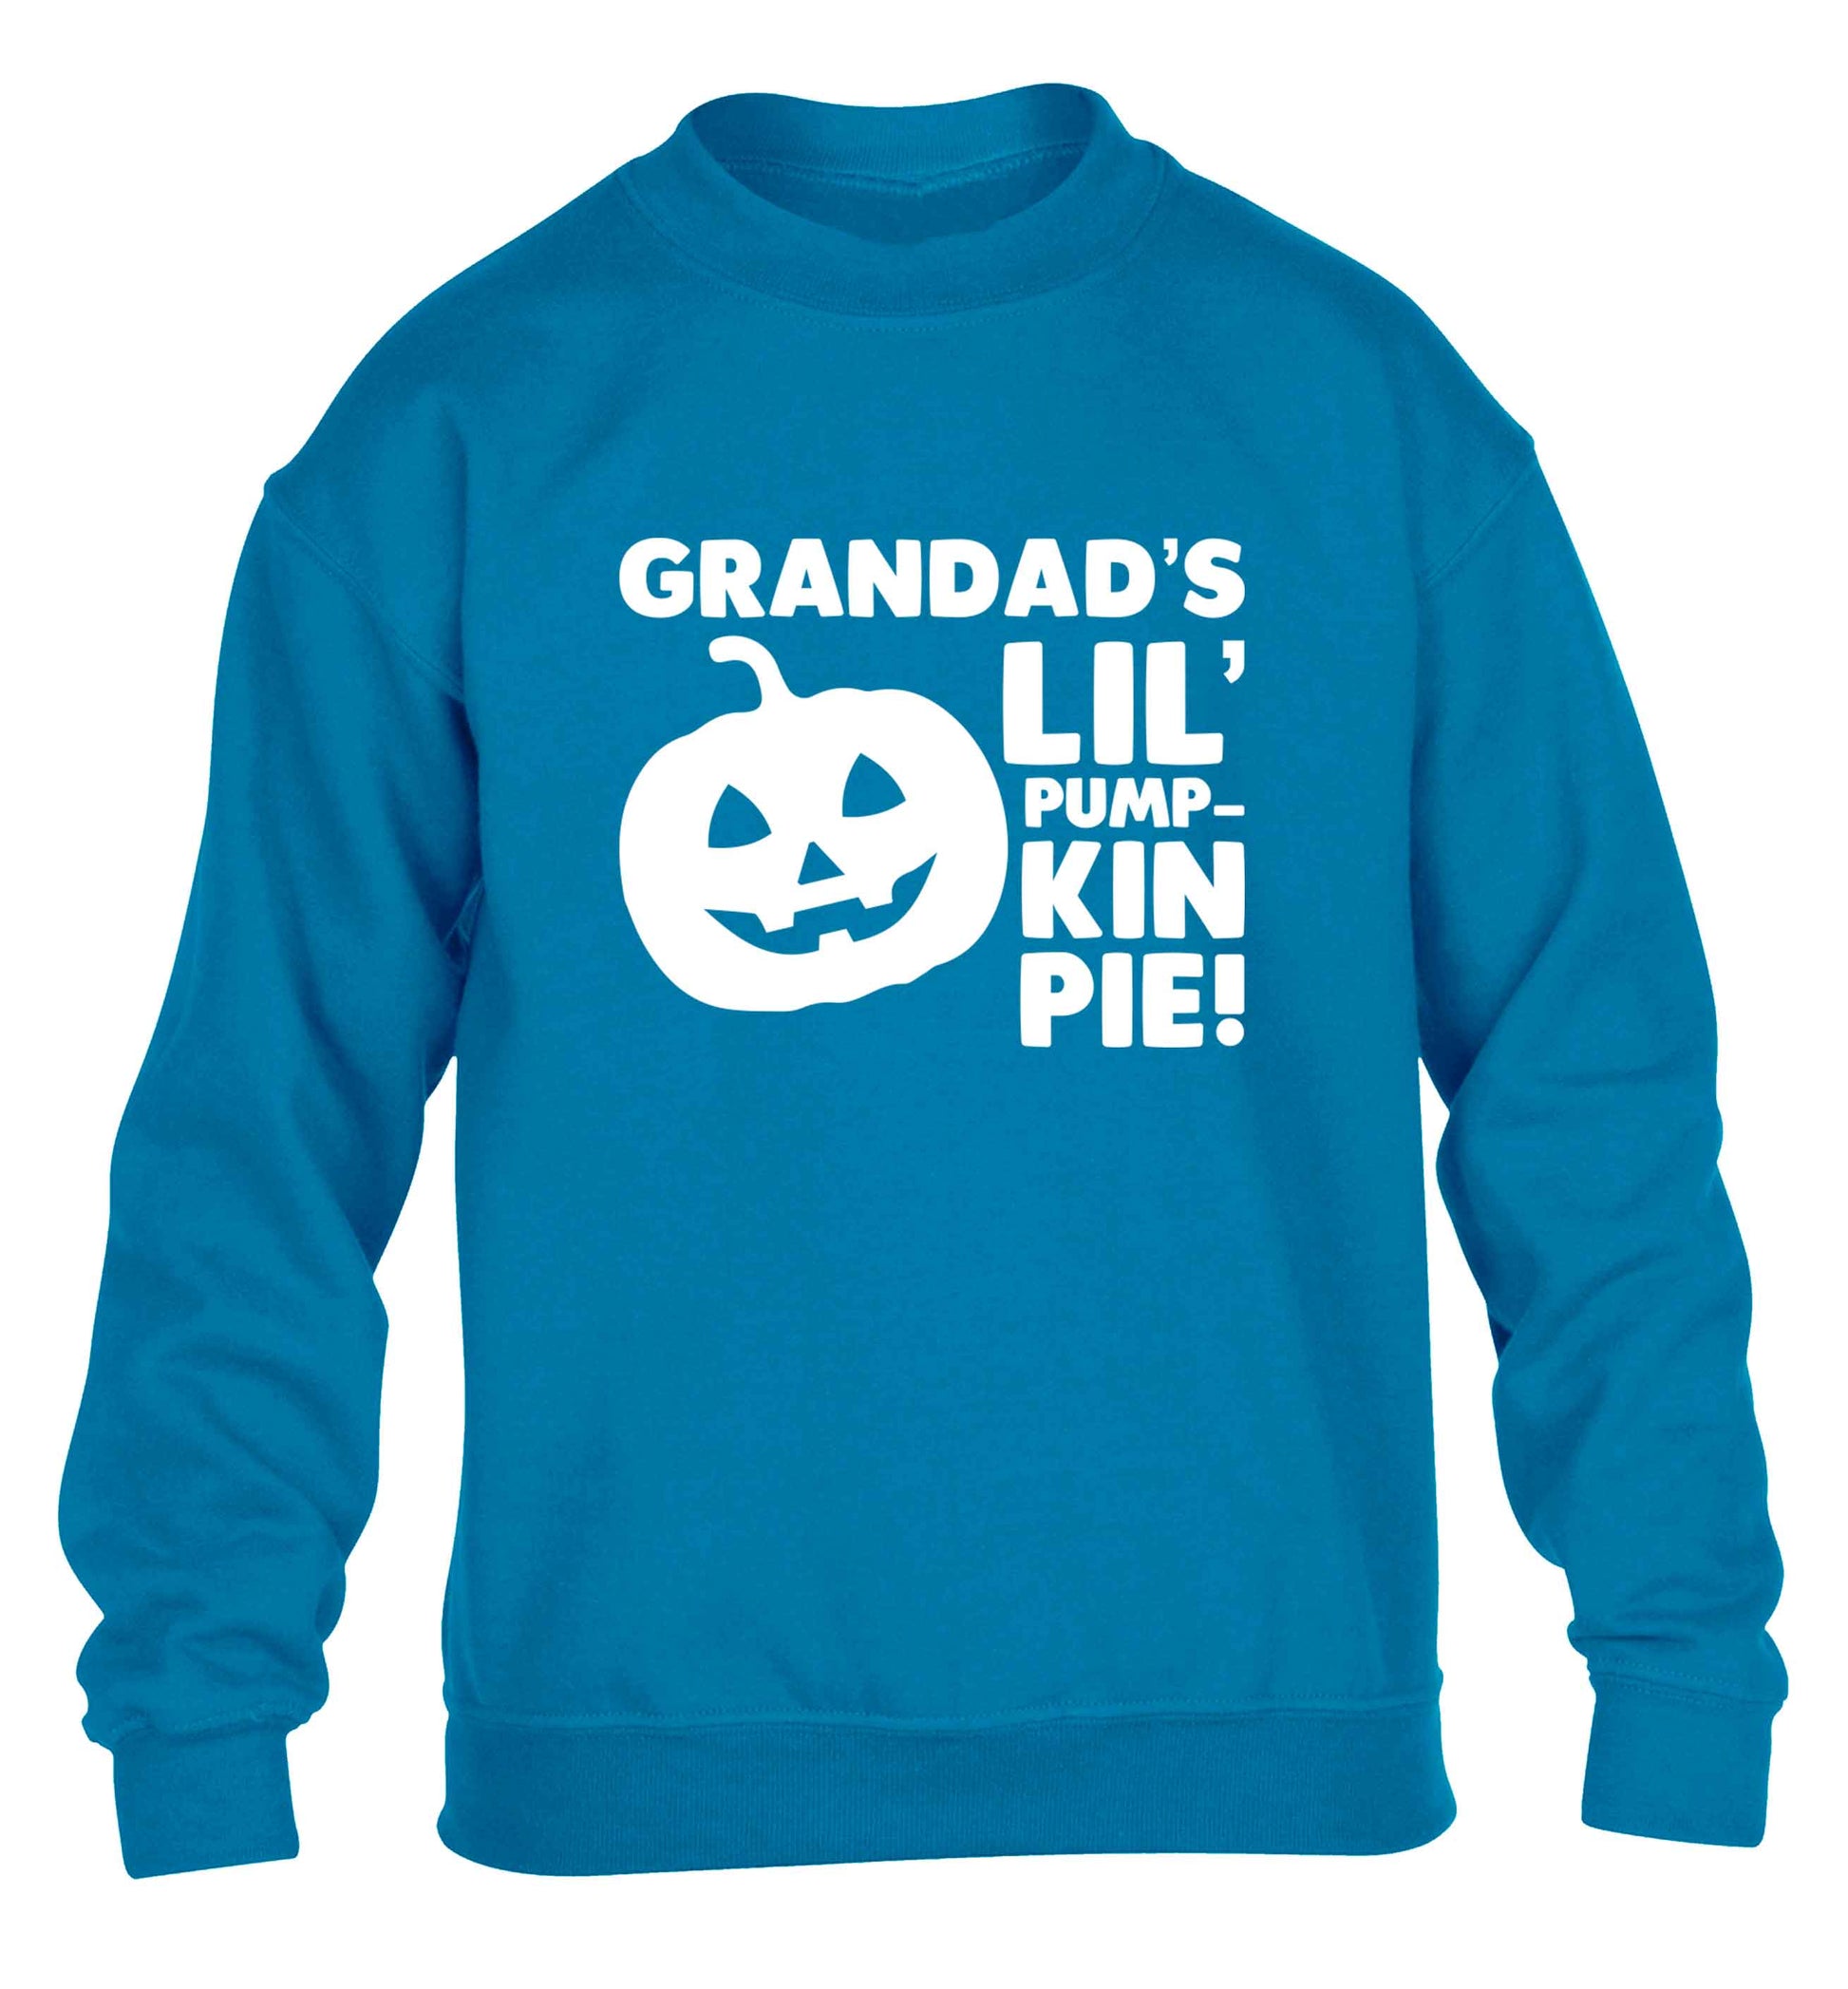 Grandad's lil' pumpkin pie children's blue sweater 12-13 Years